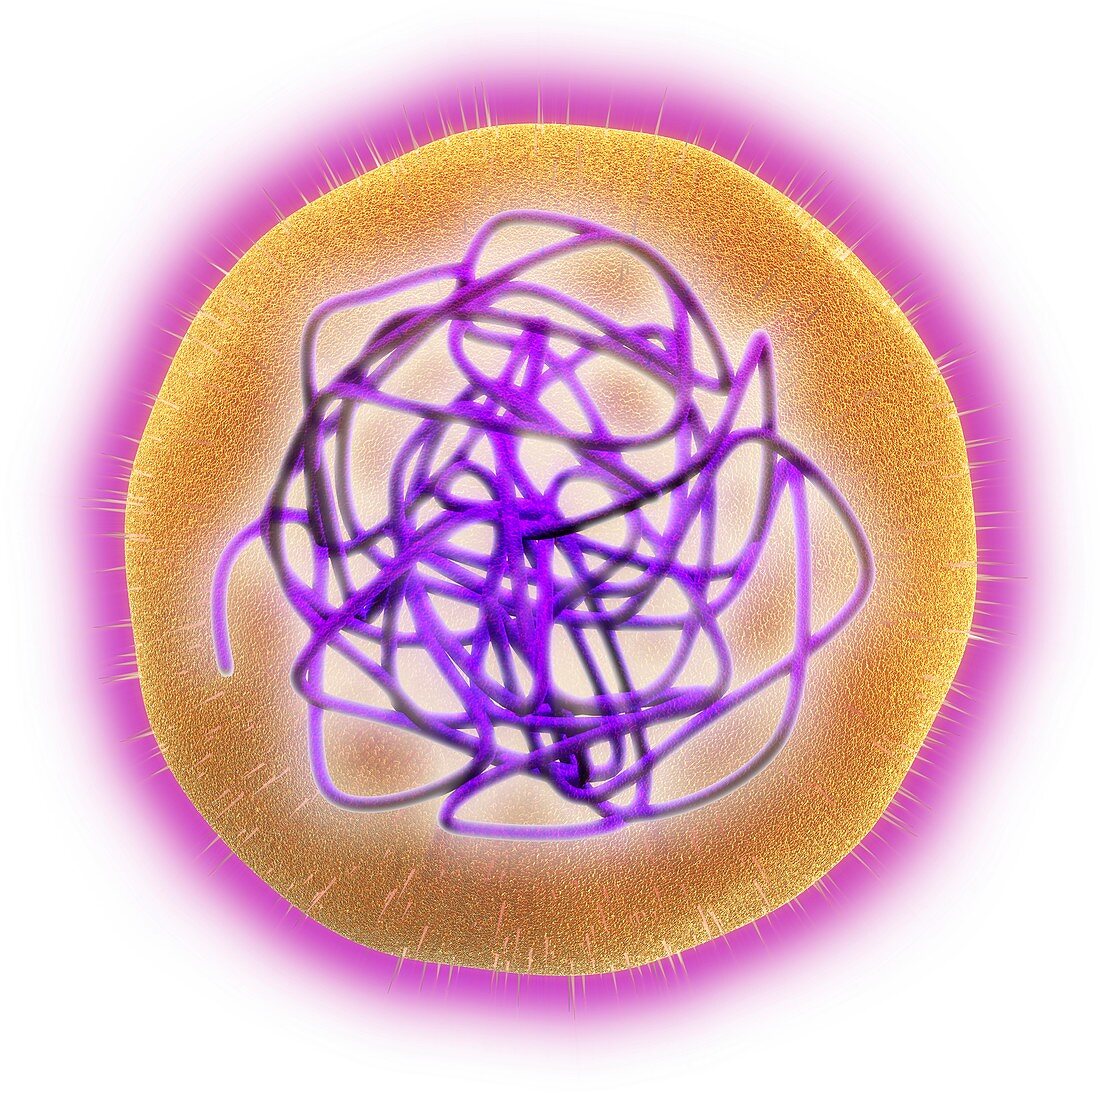 Rubella (German measles) virus,artwork